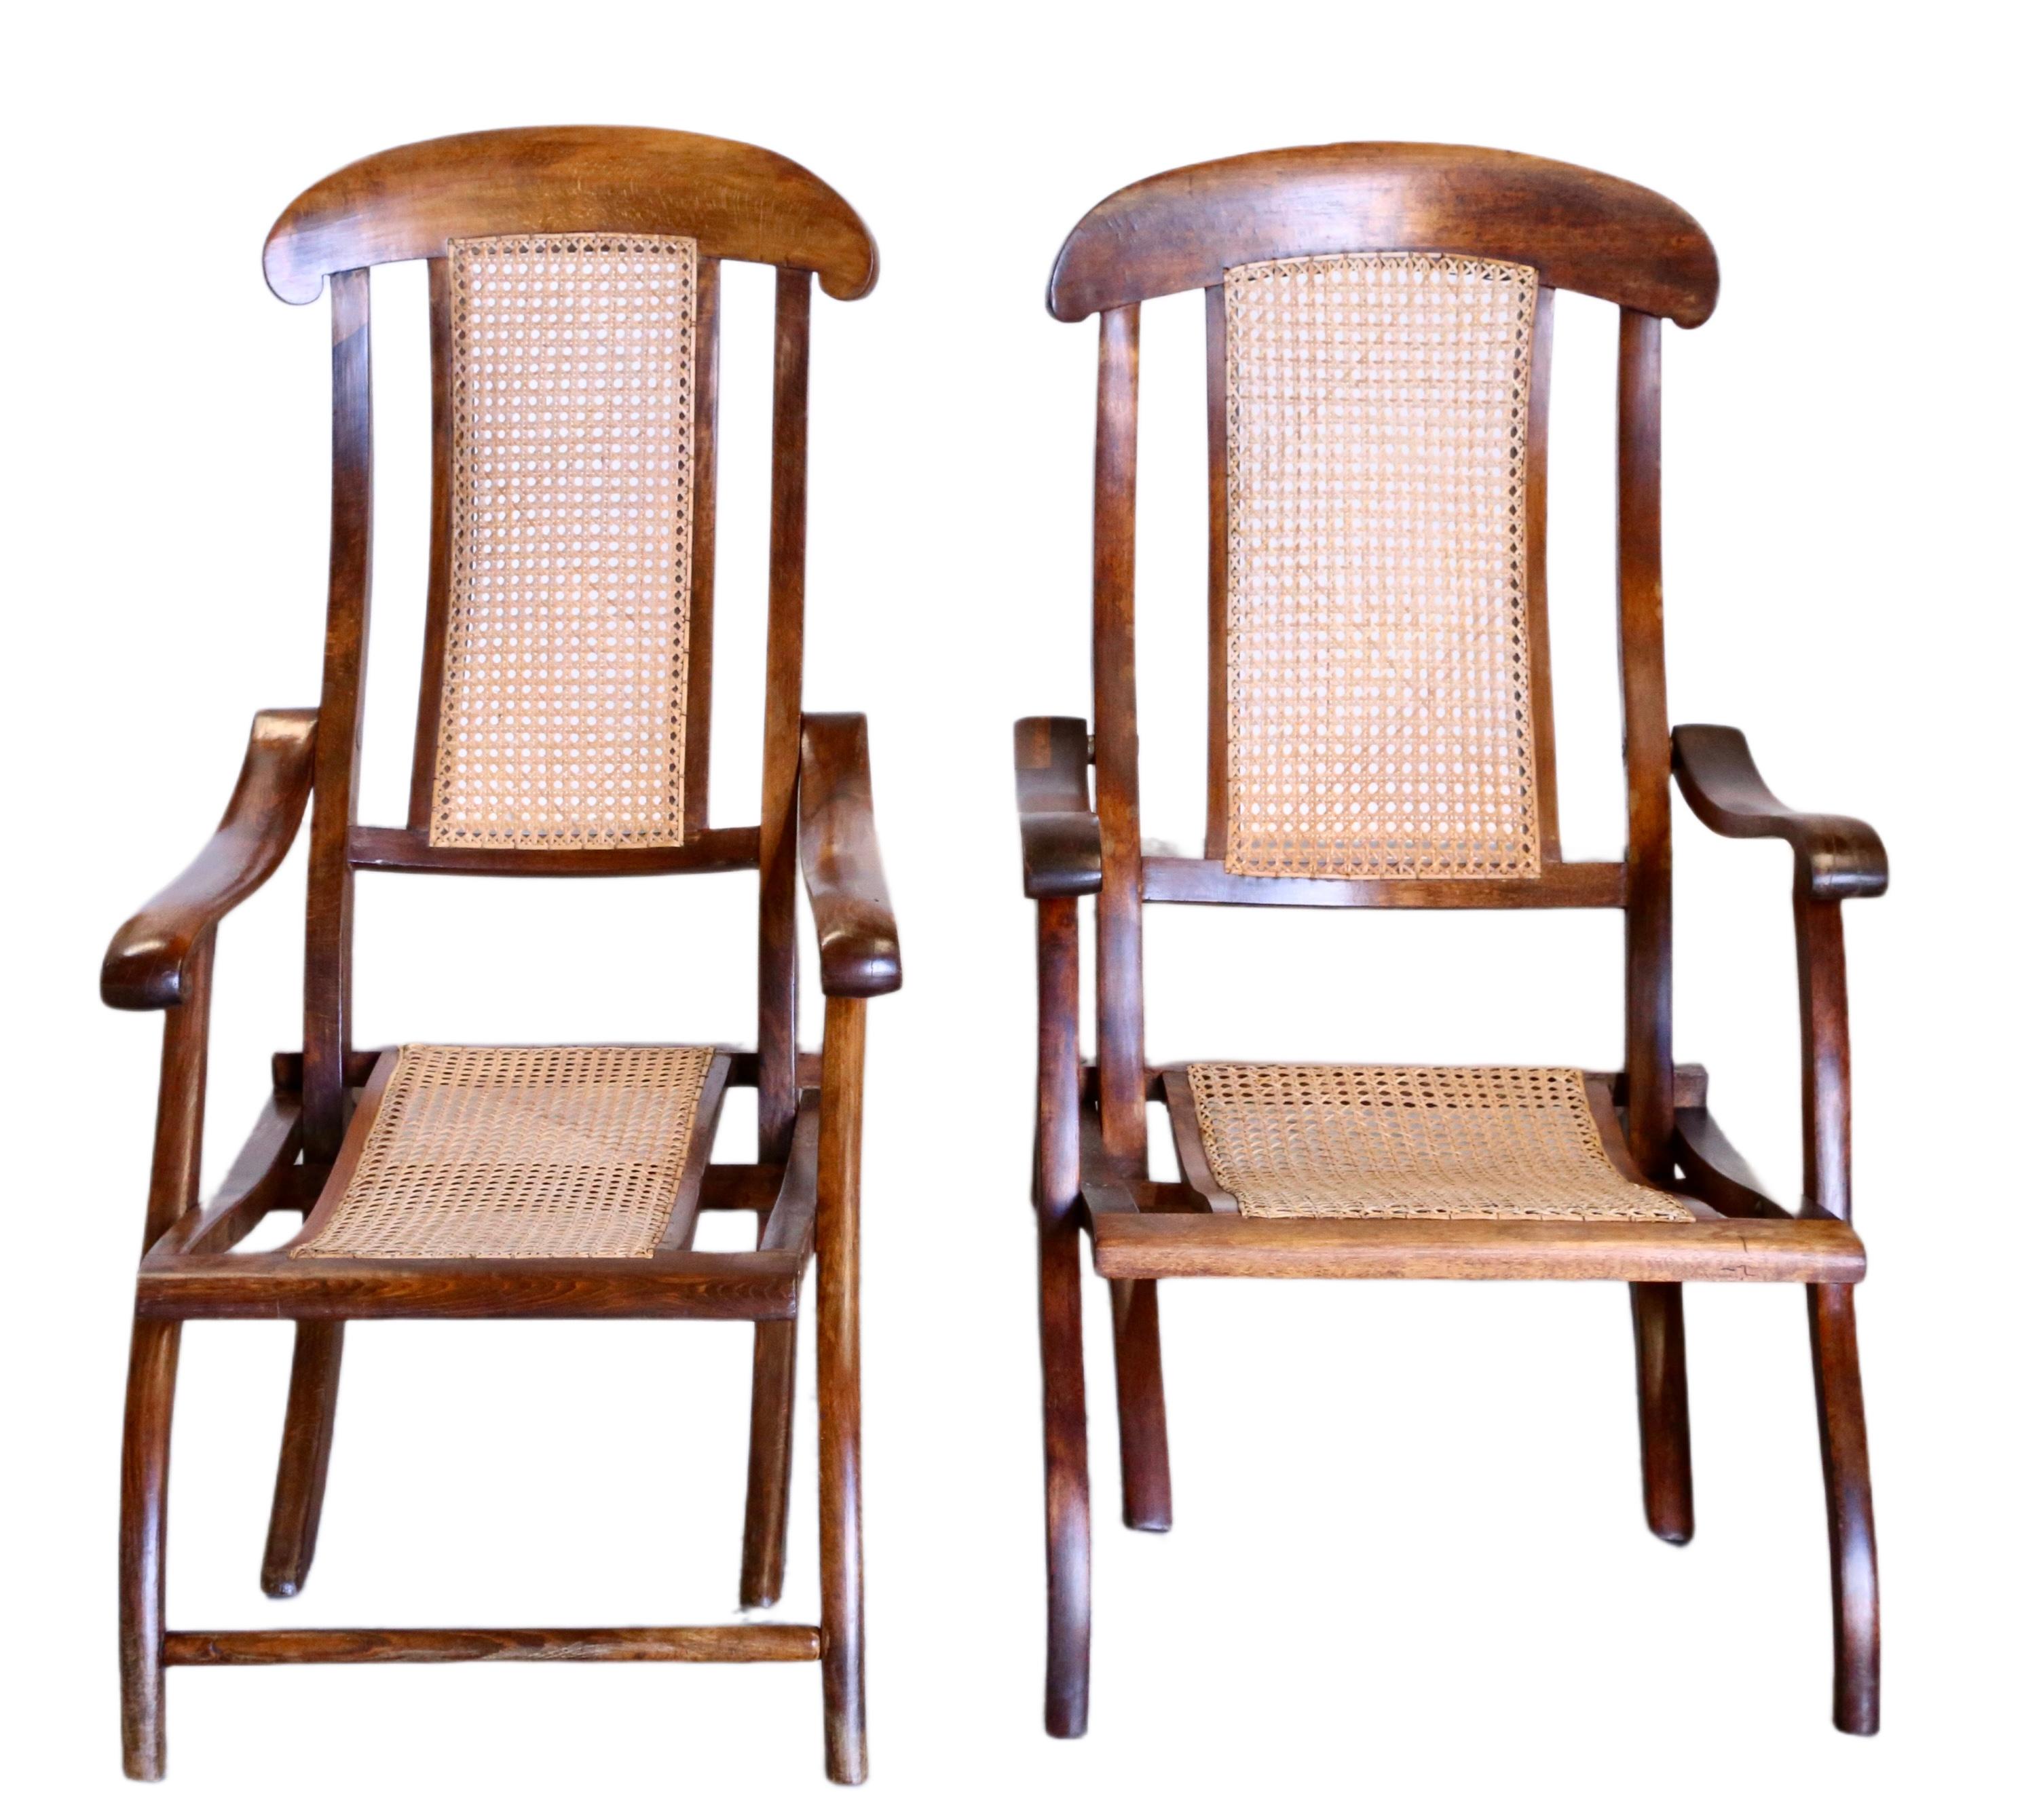 Remontez le temps jusqu'à l'époque aventureuse de l'ère victorienne avec ces exquises chaises pliantes à vapeur - de taille légèrement différente, fabriquées en noyer massif et ornées de canne tressée. Ces chaises, qui rappellent les grands voyages